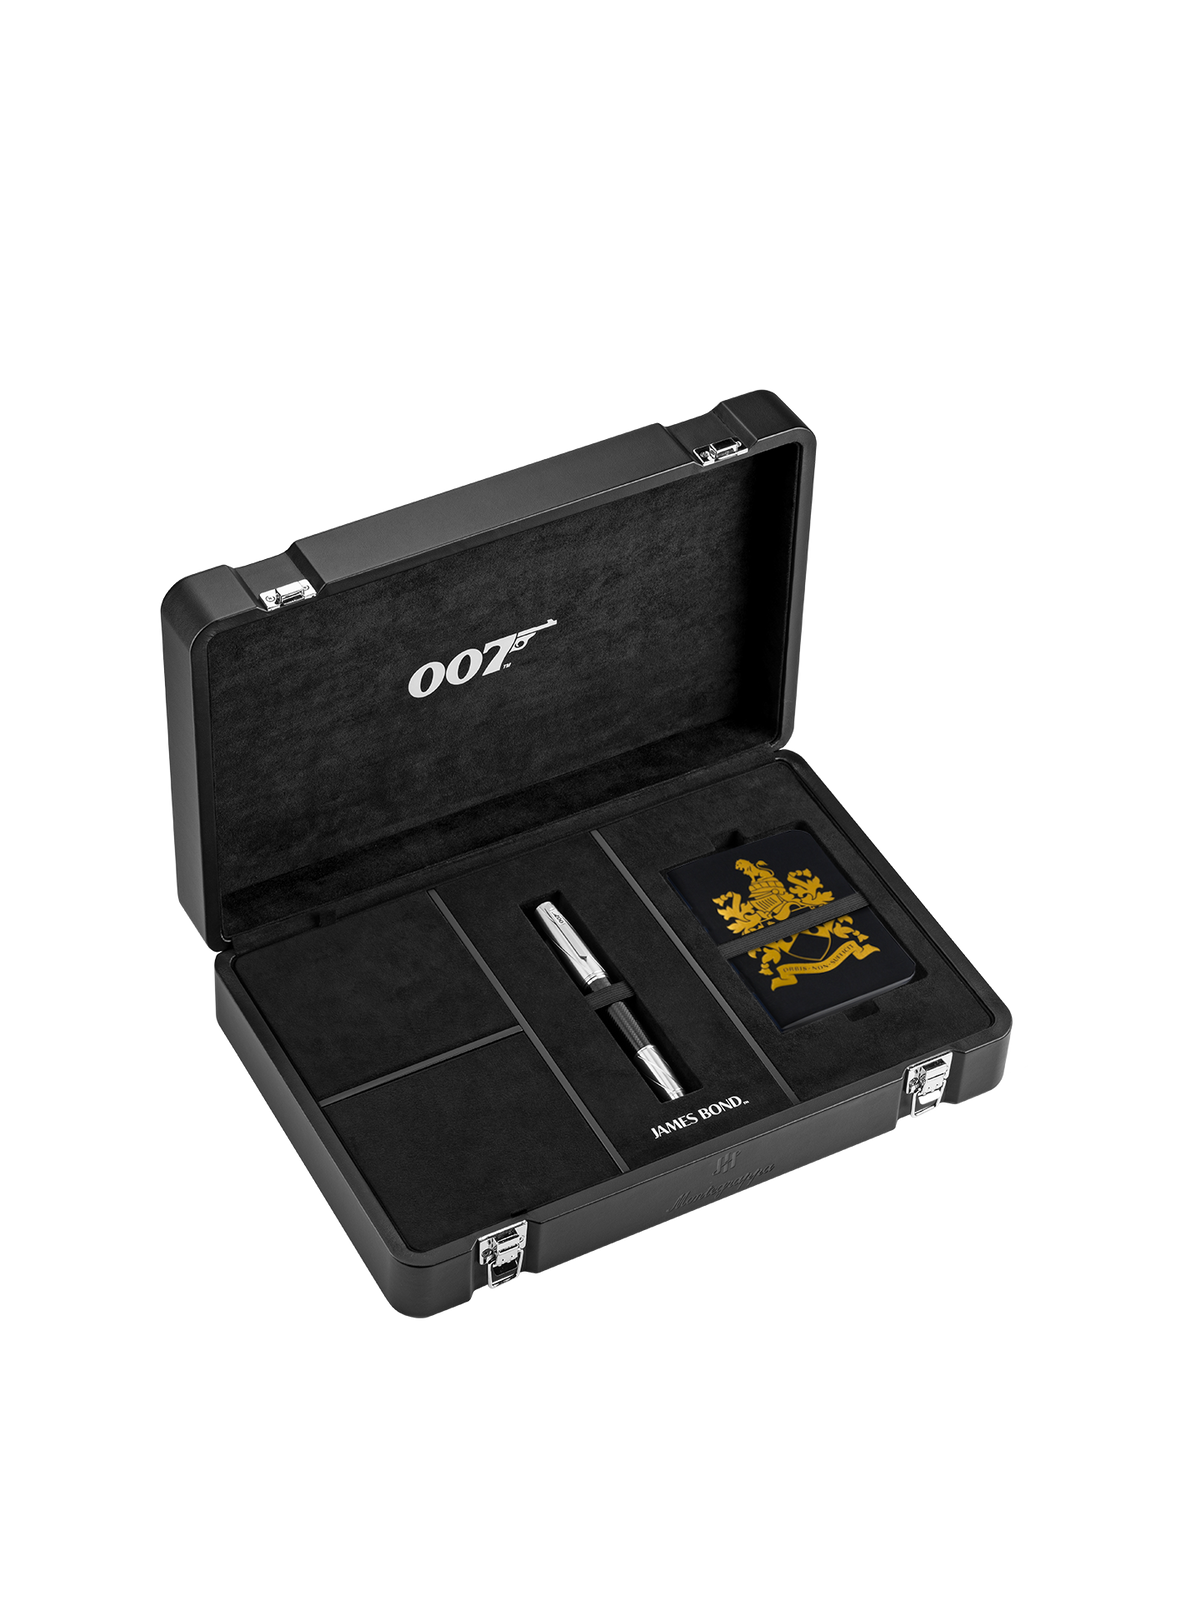 James Bond 007 Spymaster Duo Tintenroller - Nummerierte Edition - Von Montegrappa 